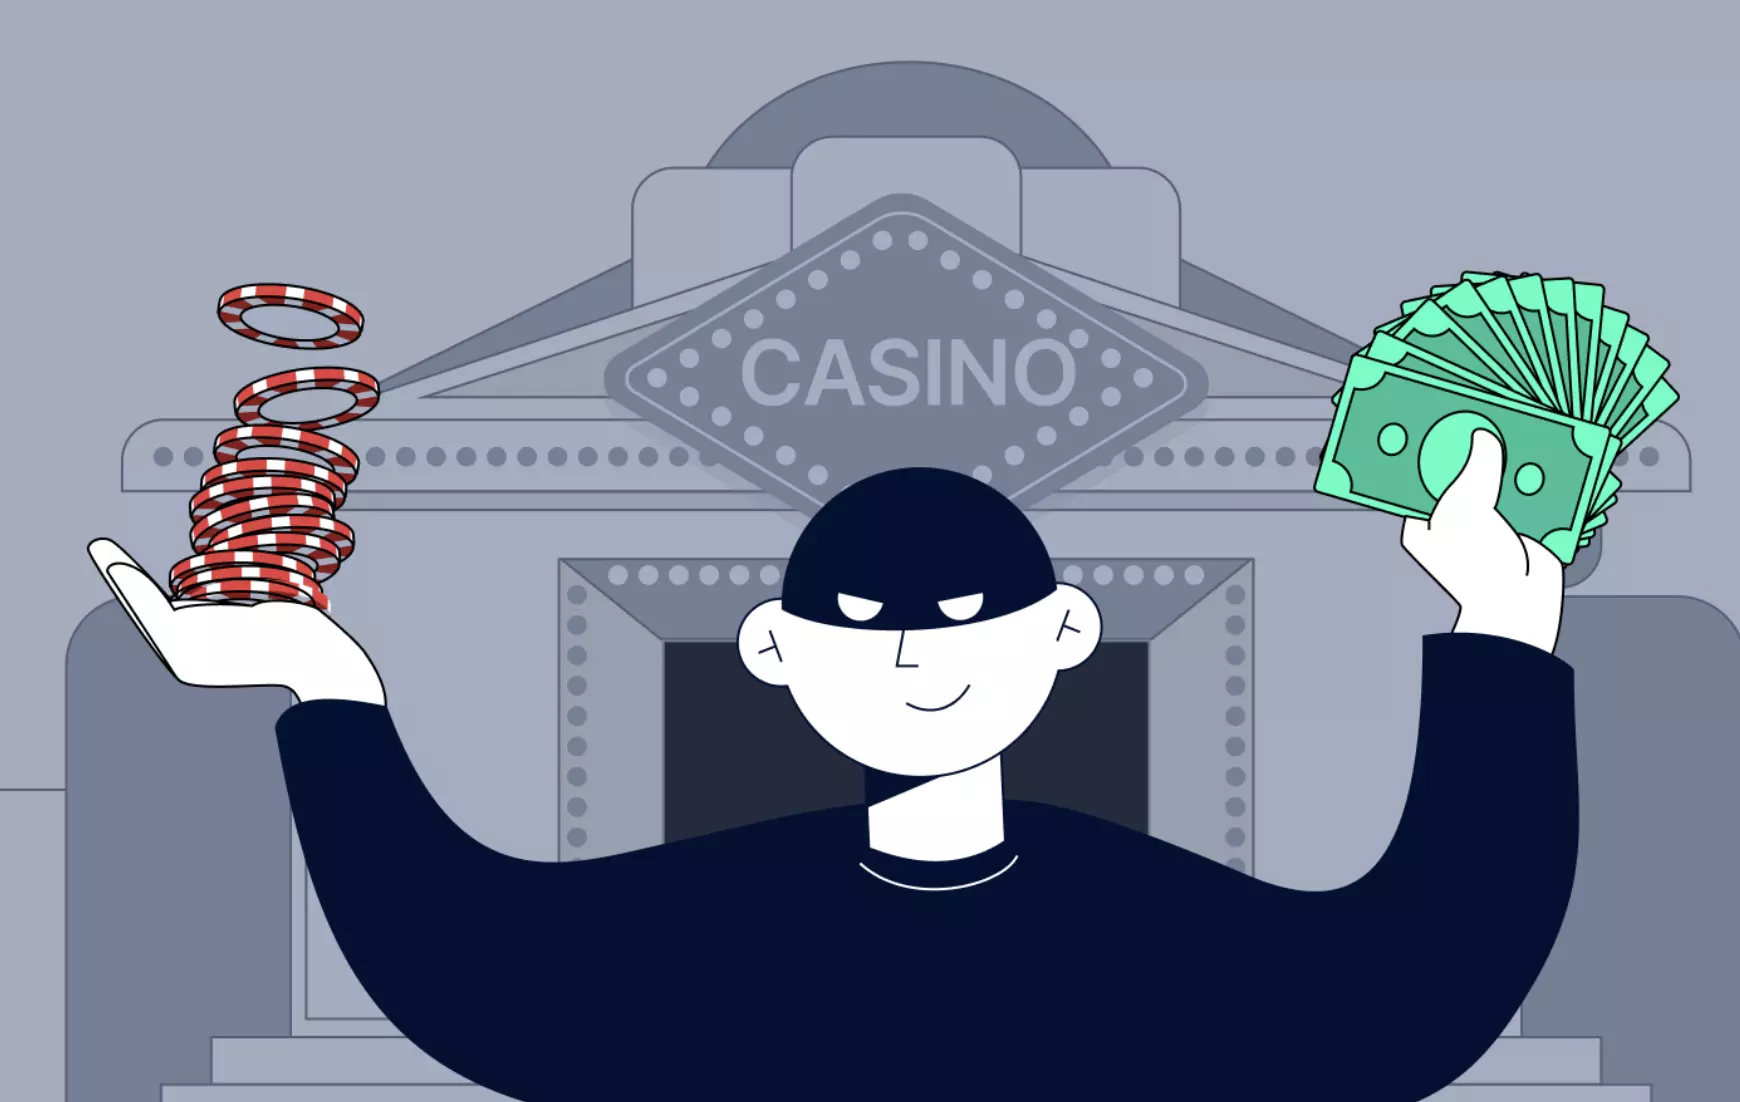 How easy is money laundering in online casinos?